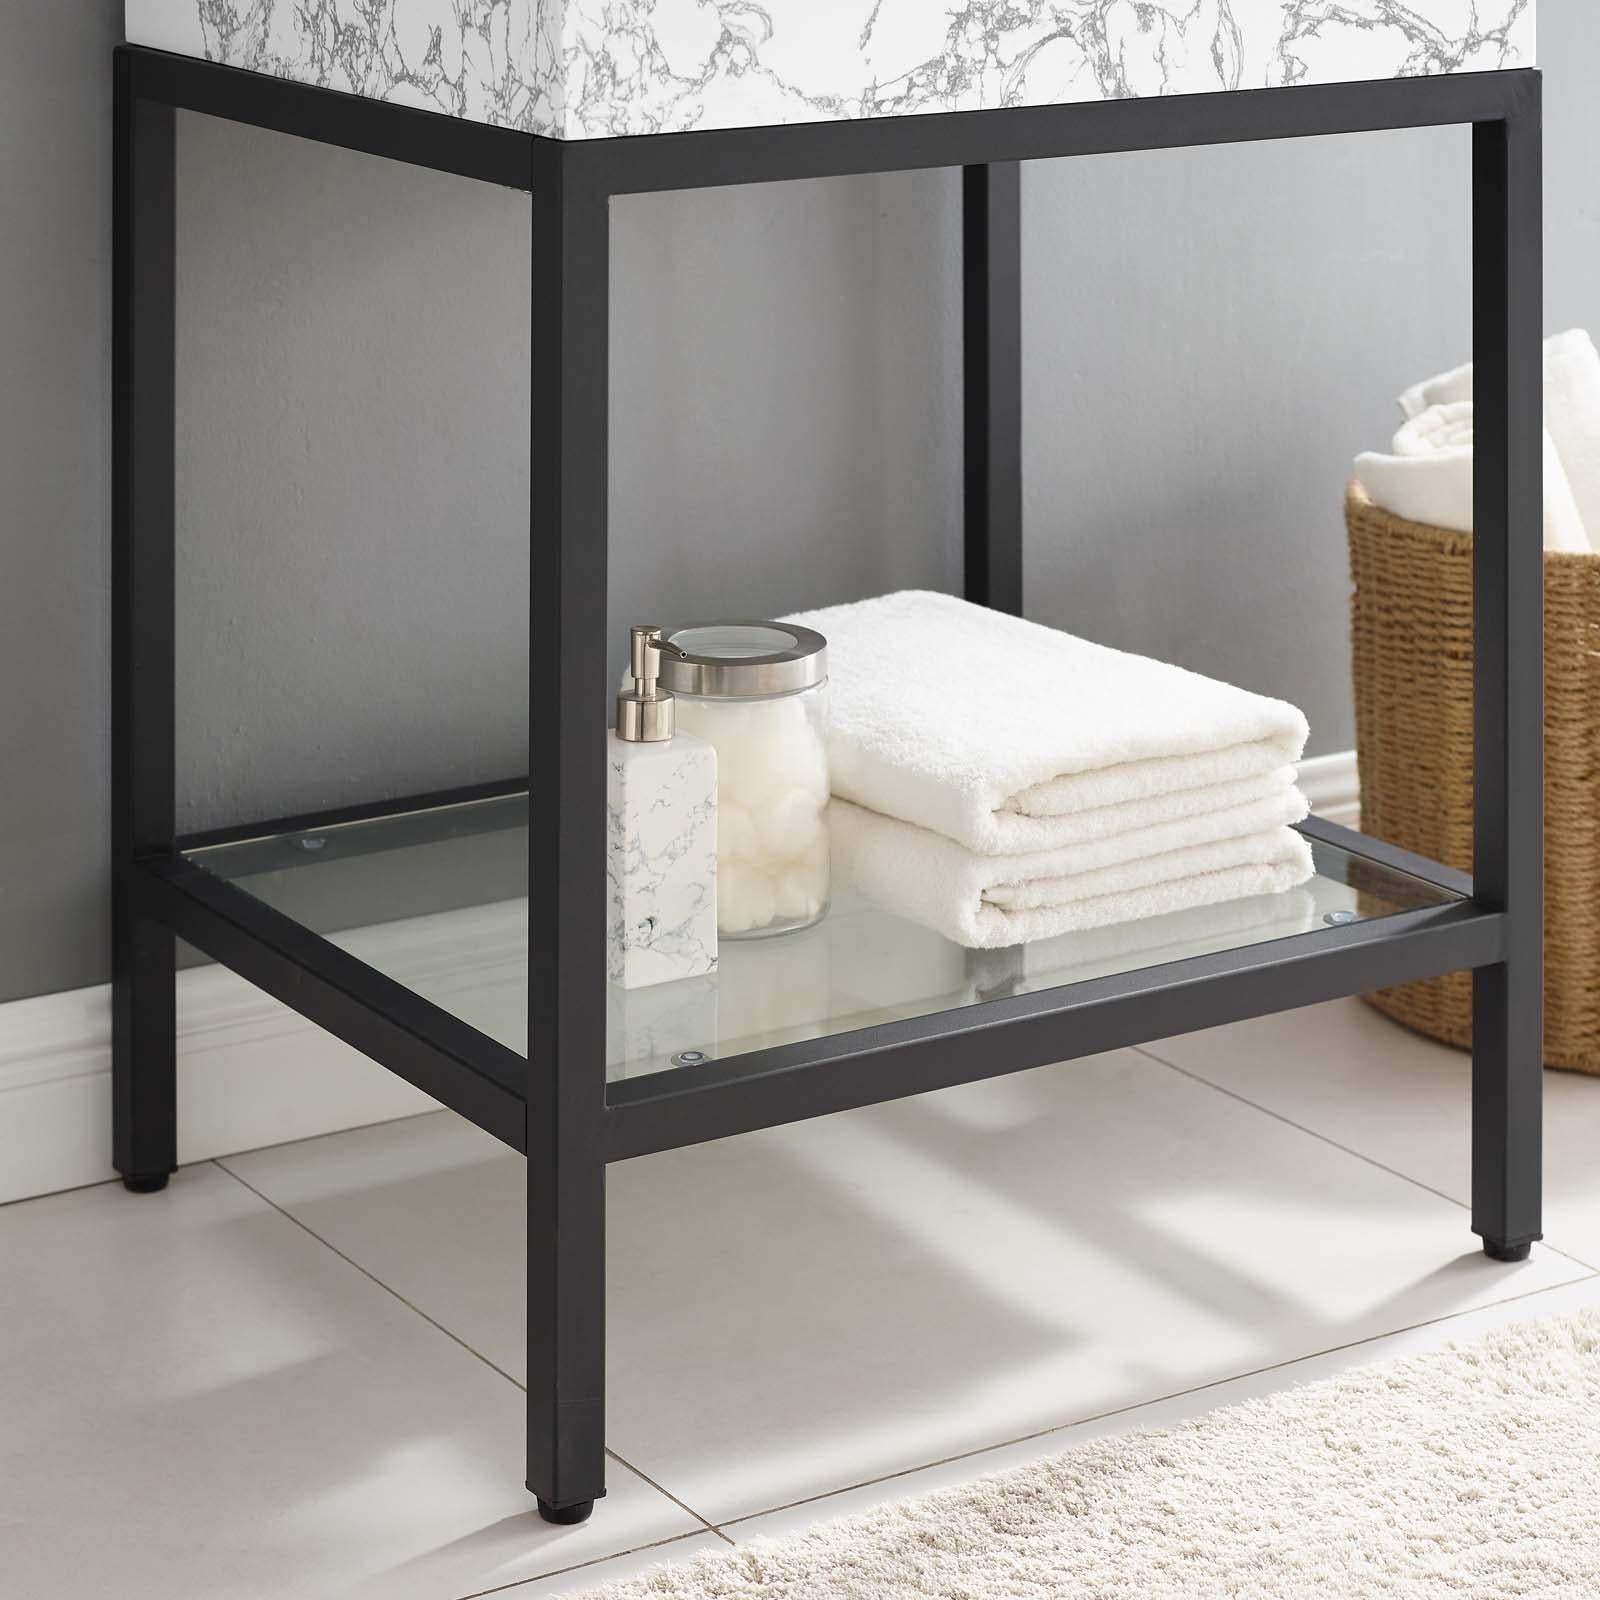 Modway Furniture Modern Kingsley 26" Black Stainless Steel Bathroom Vanity - EEI-3996